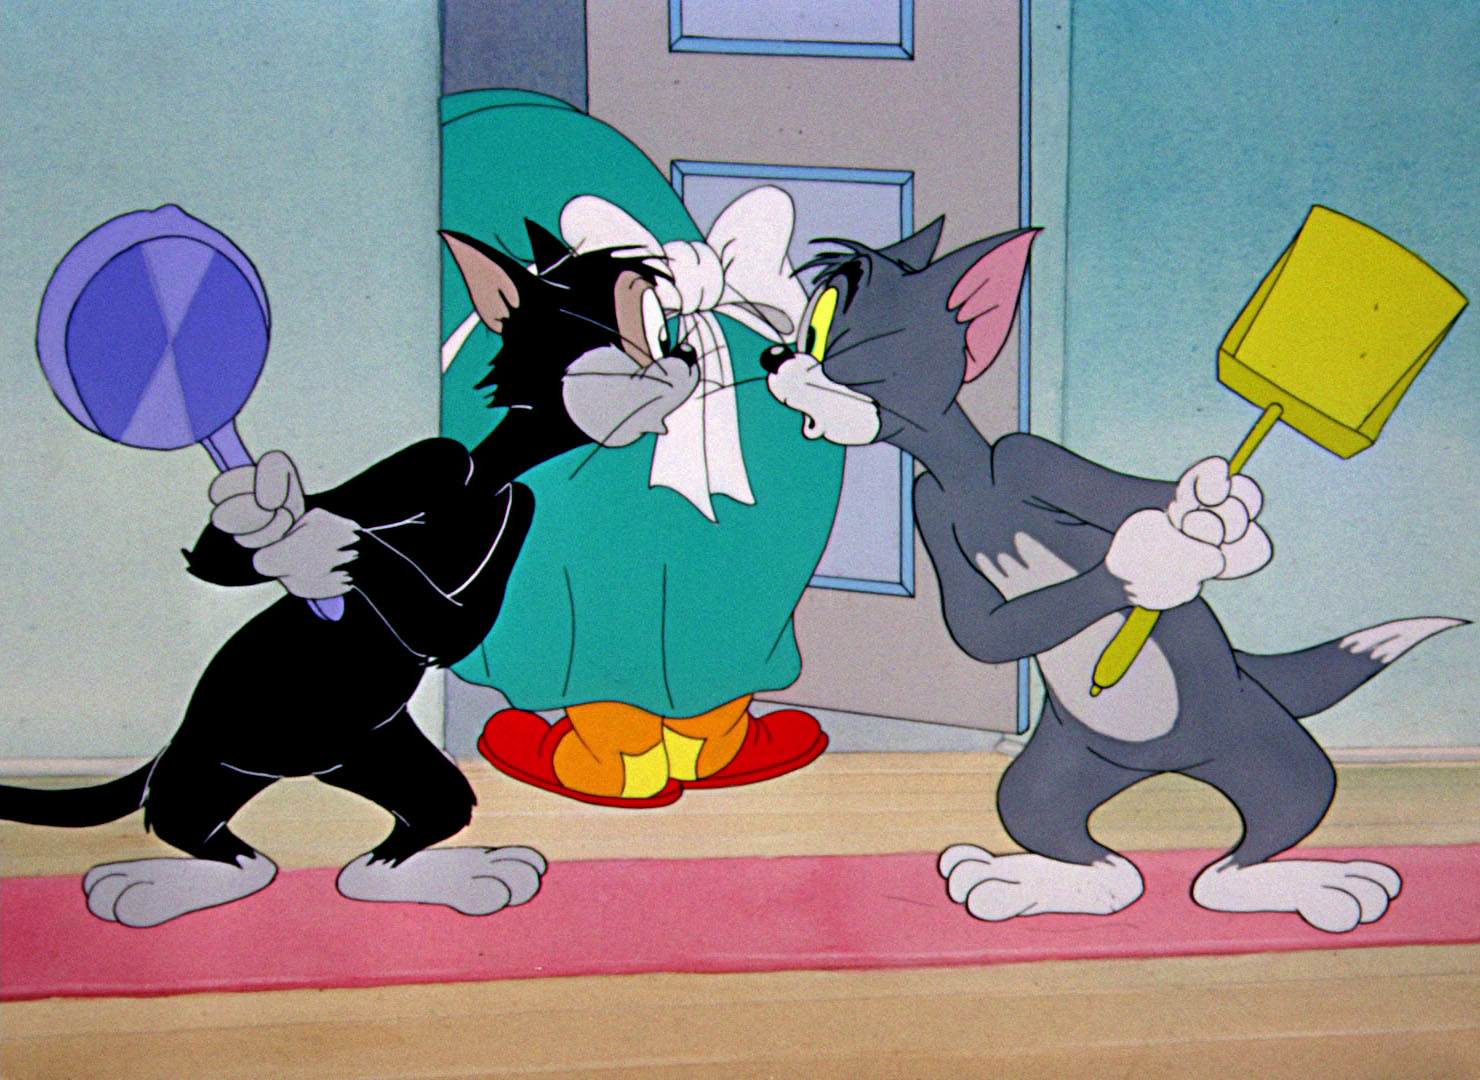 Tom jerry 2. Том и Джерри том и Бутч. Tom and Jerry 1954. Tom and Jerry 2. Tom and Jerry 32 Episode.